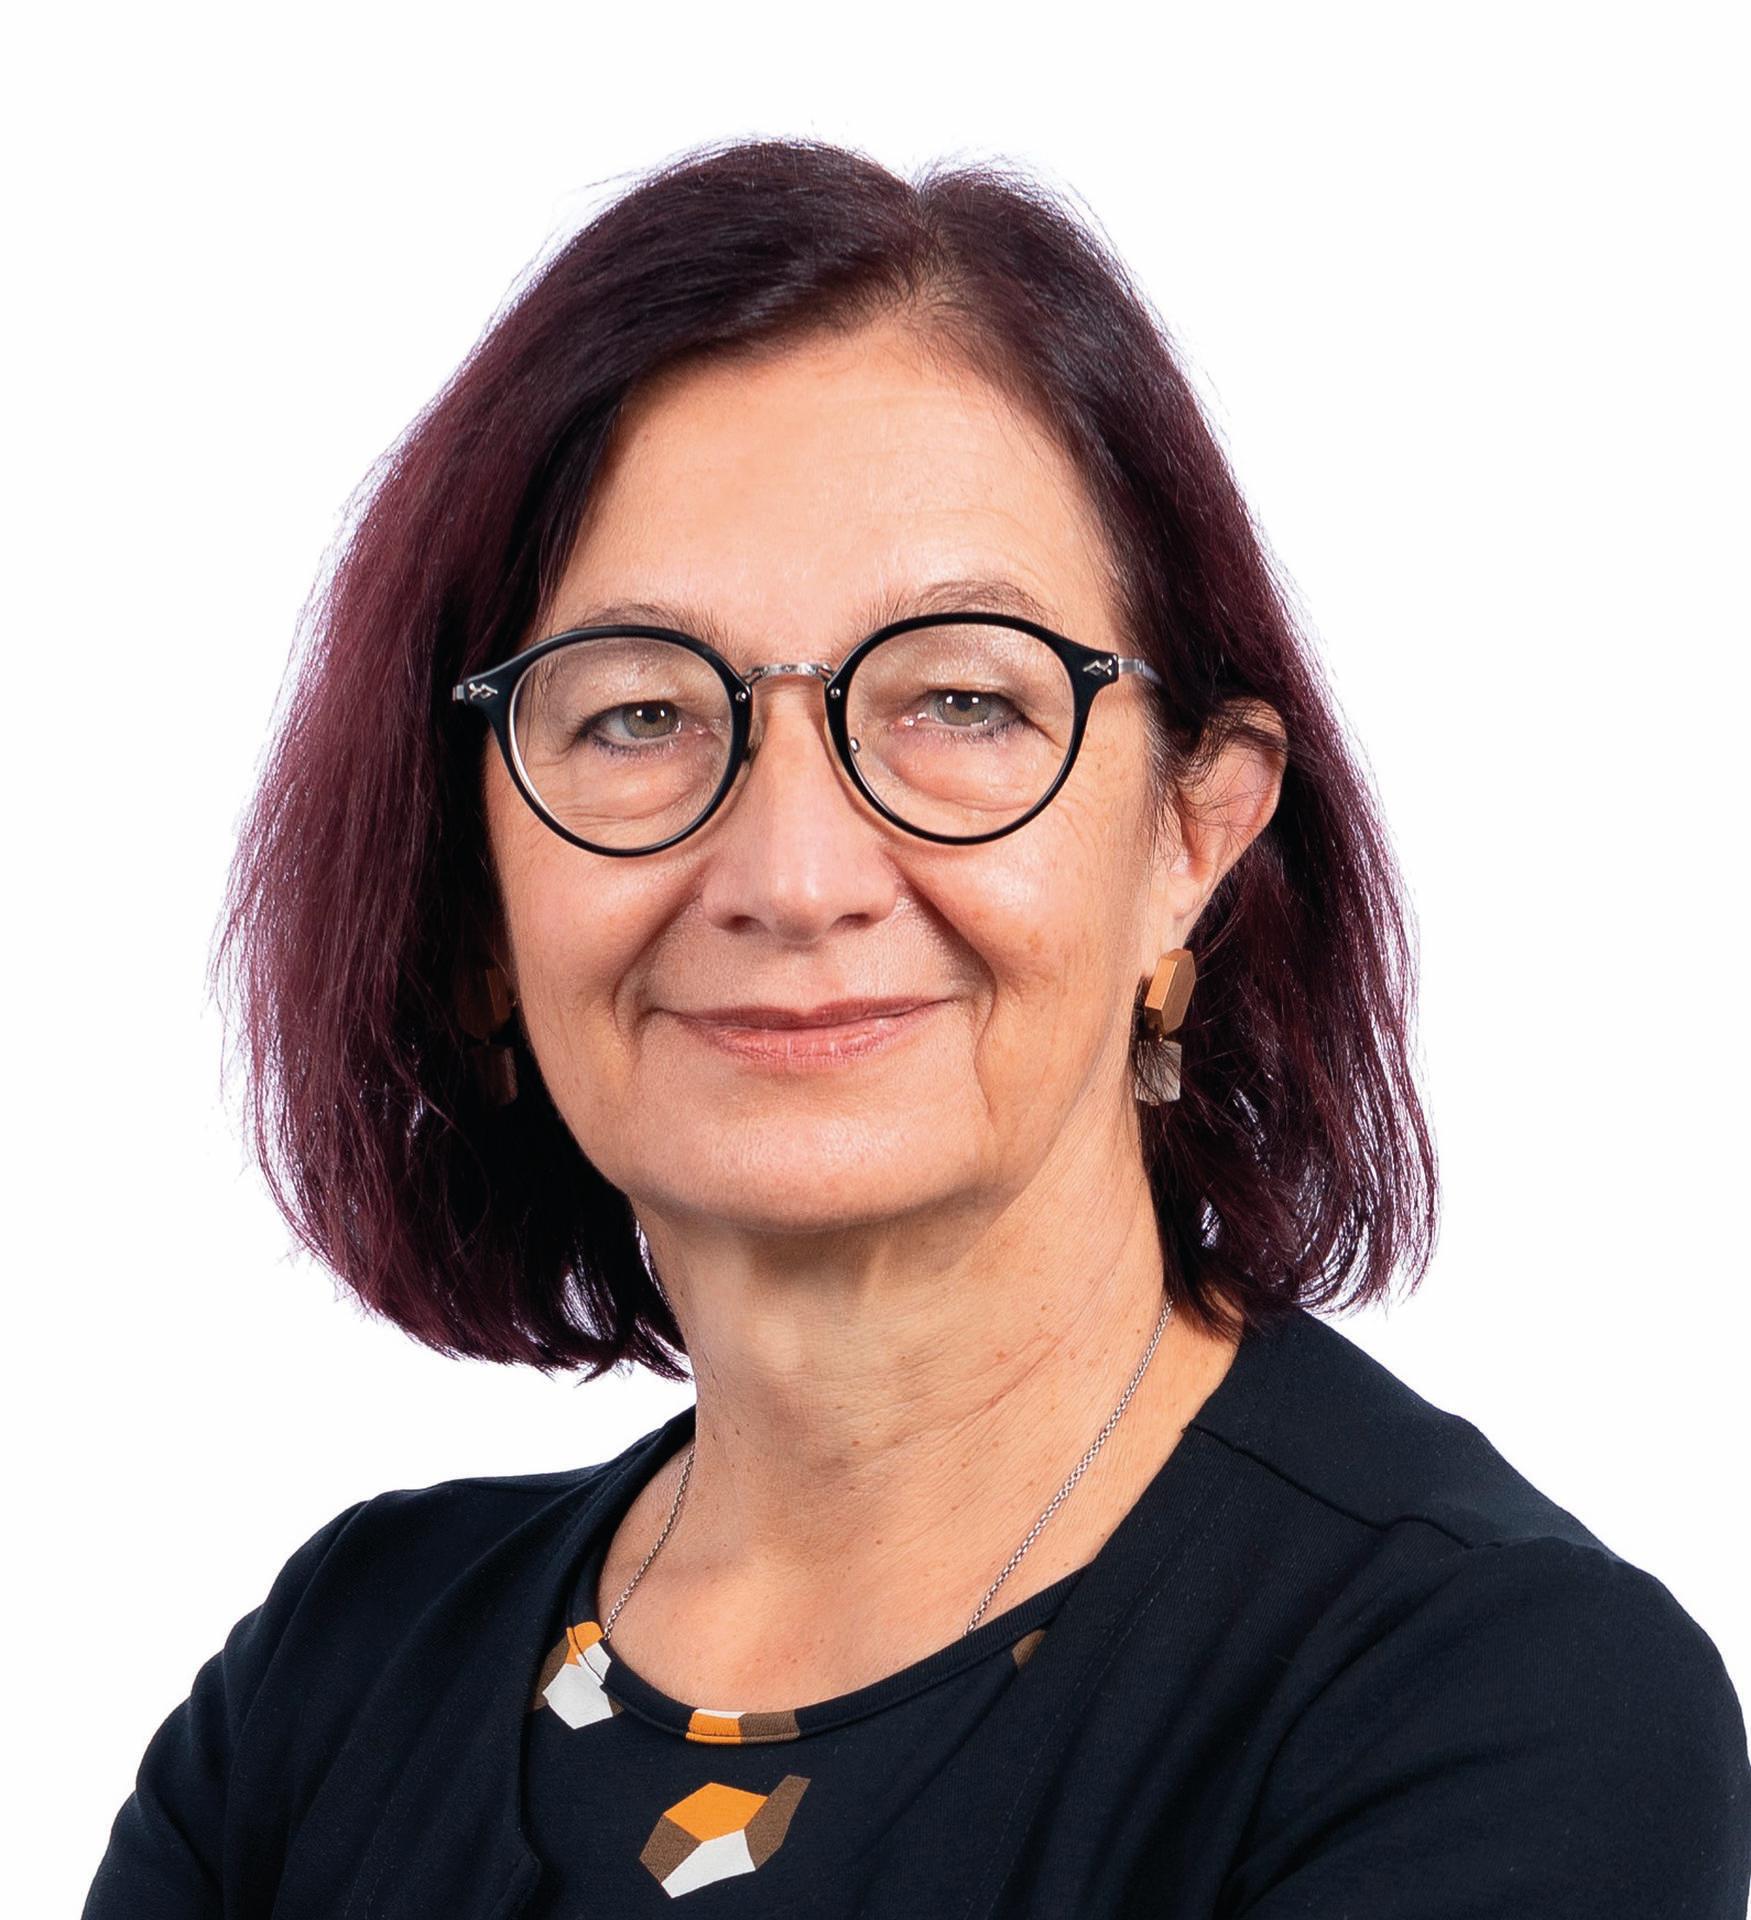 Die neue FMH-Präsidentin Dr. Yvonne Gilli zu den behördlichen Tarifen beim Impfen